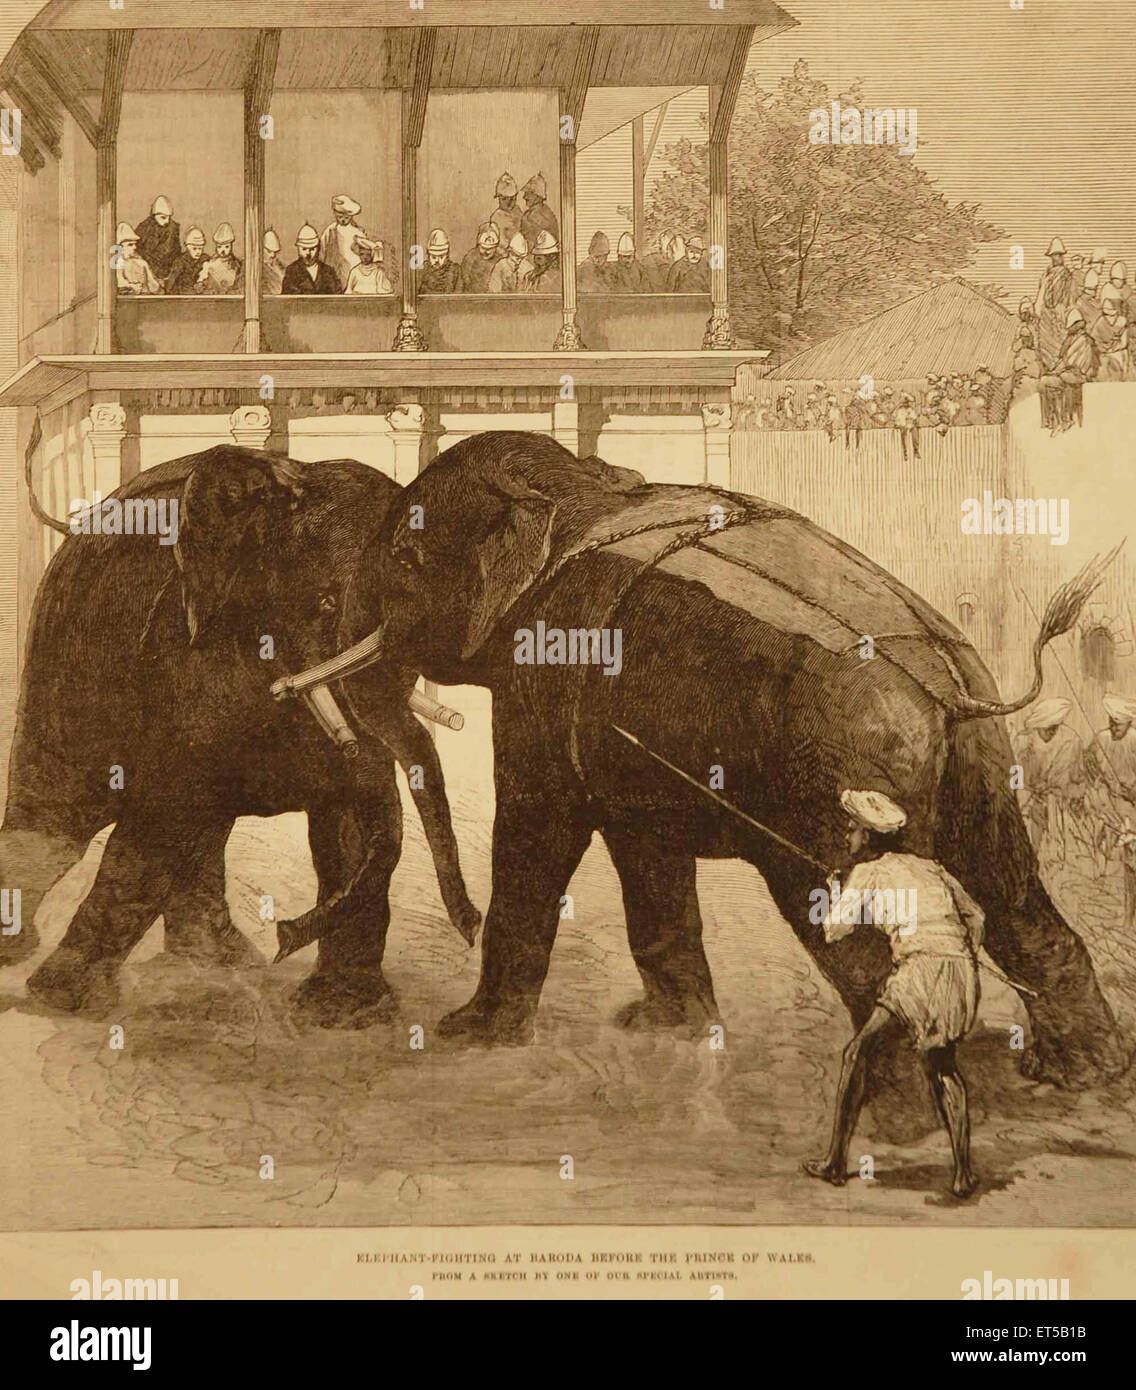 Königliche Tour, Elefantenkampf bei Baroda vor Prinz von Wales; Gujarat; Indien; alte Vintage-Gravur aus dem 19. Jahrhundert Stockfoto